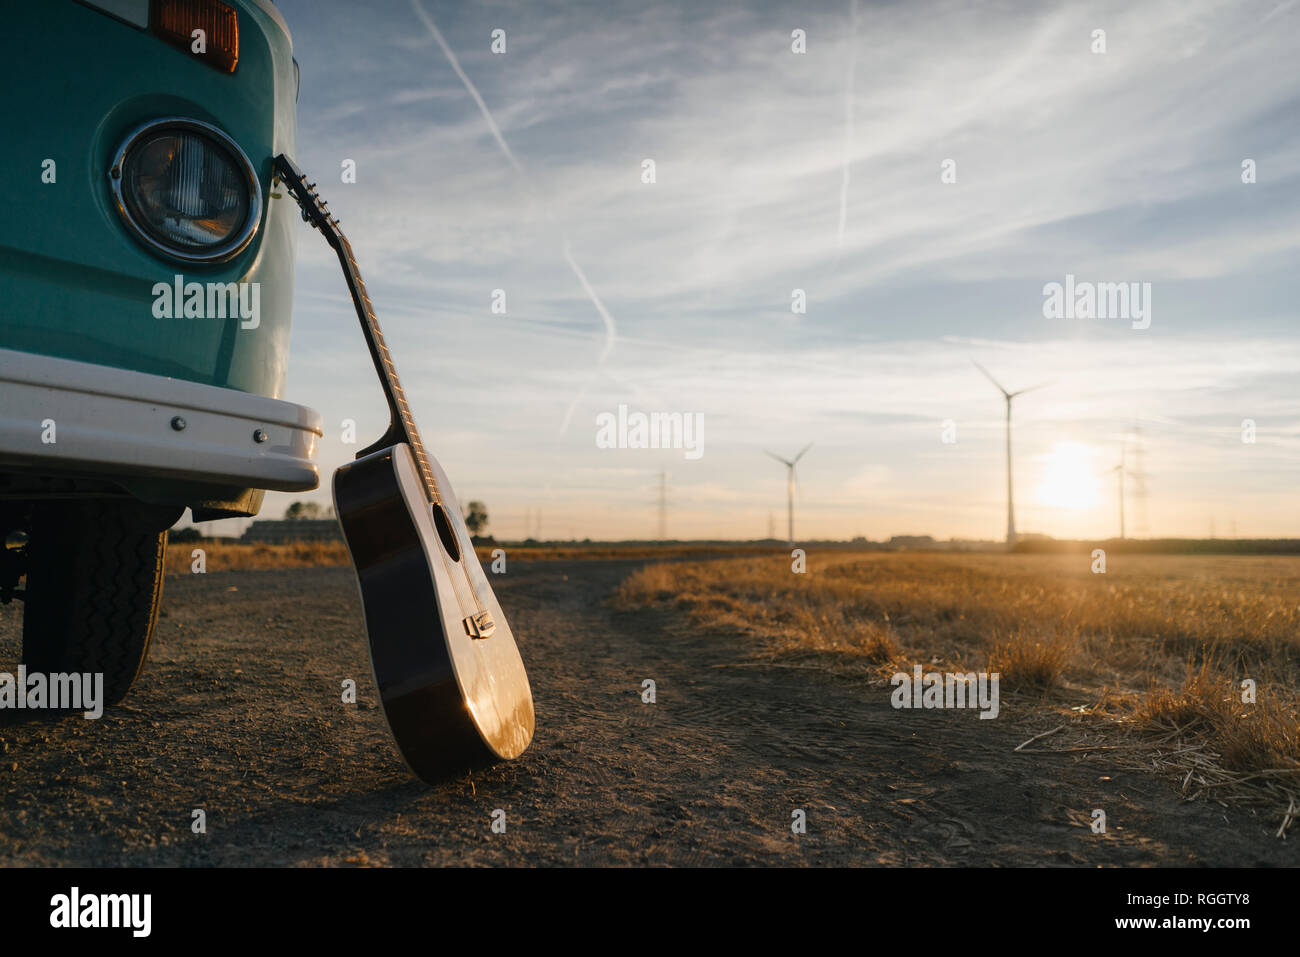 Gitarre gegen Wohnmobil in ländlichen Landschaft schiefen mit Windräder im Sonnenuntergang Stockfoto